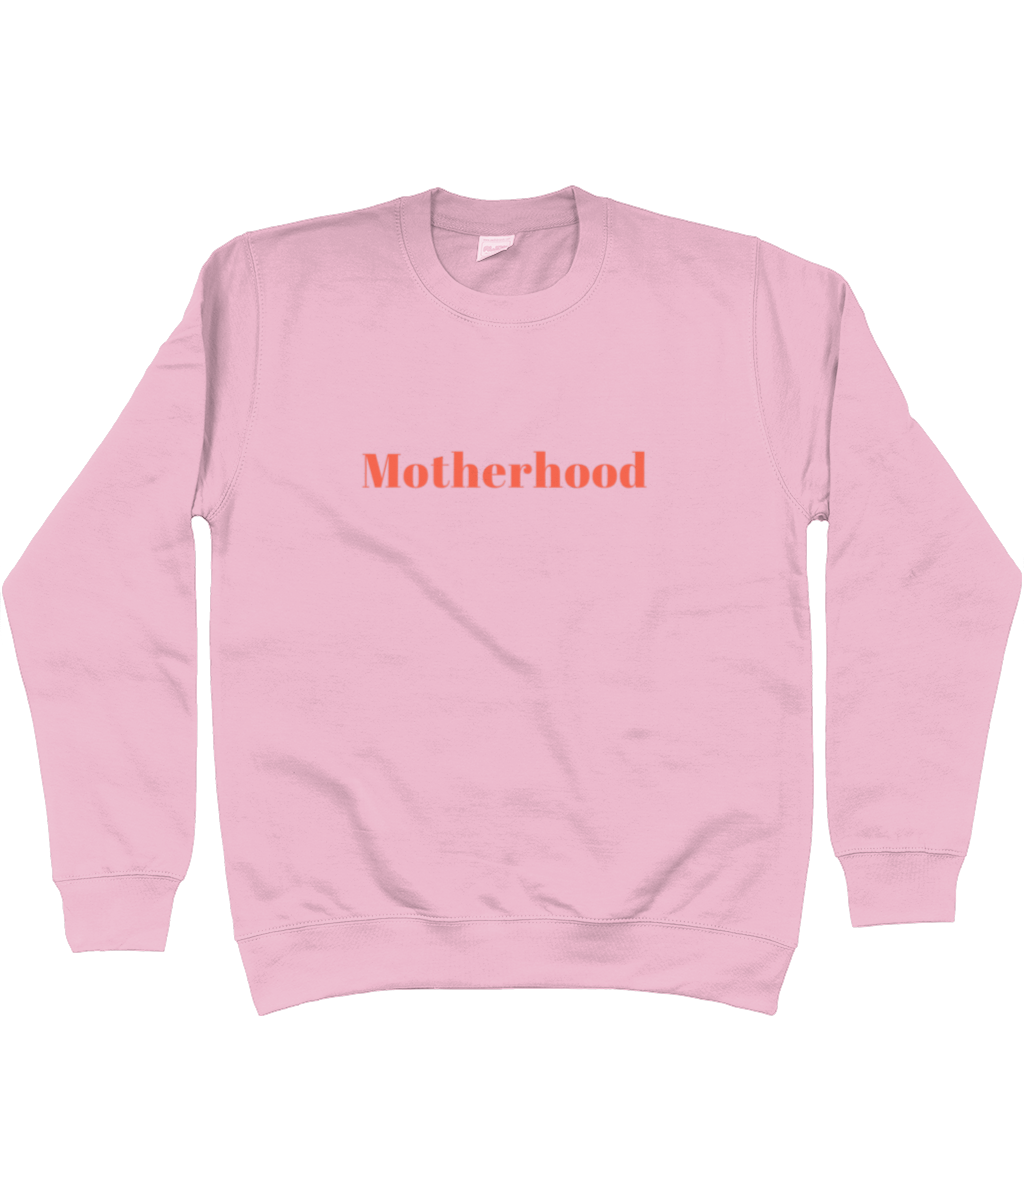 Motherhood Sweatshirt - Romance Edition